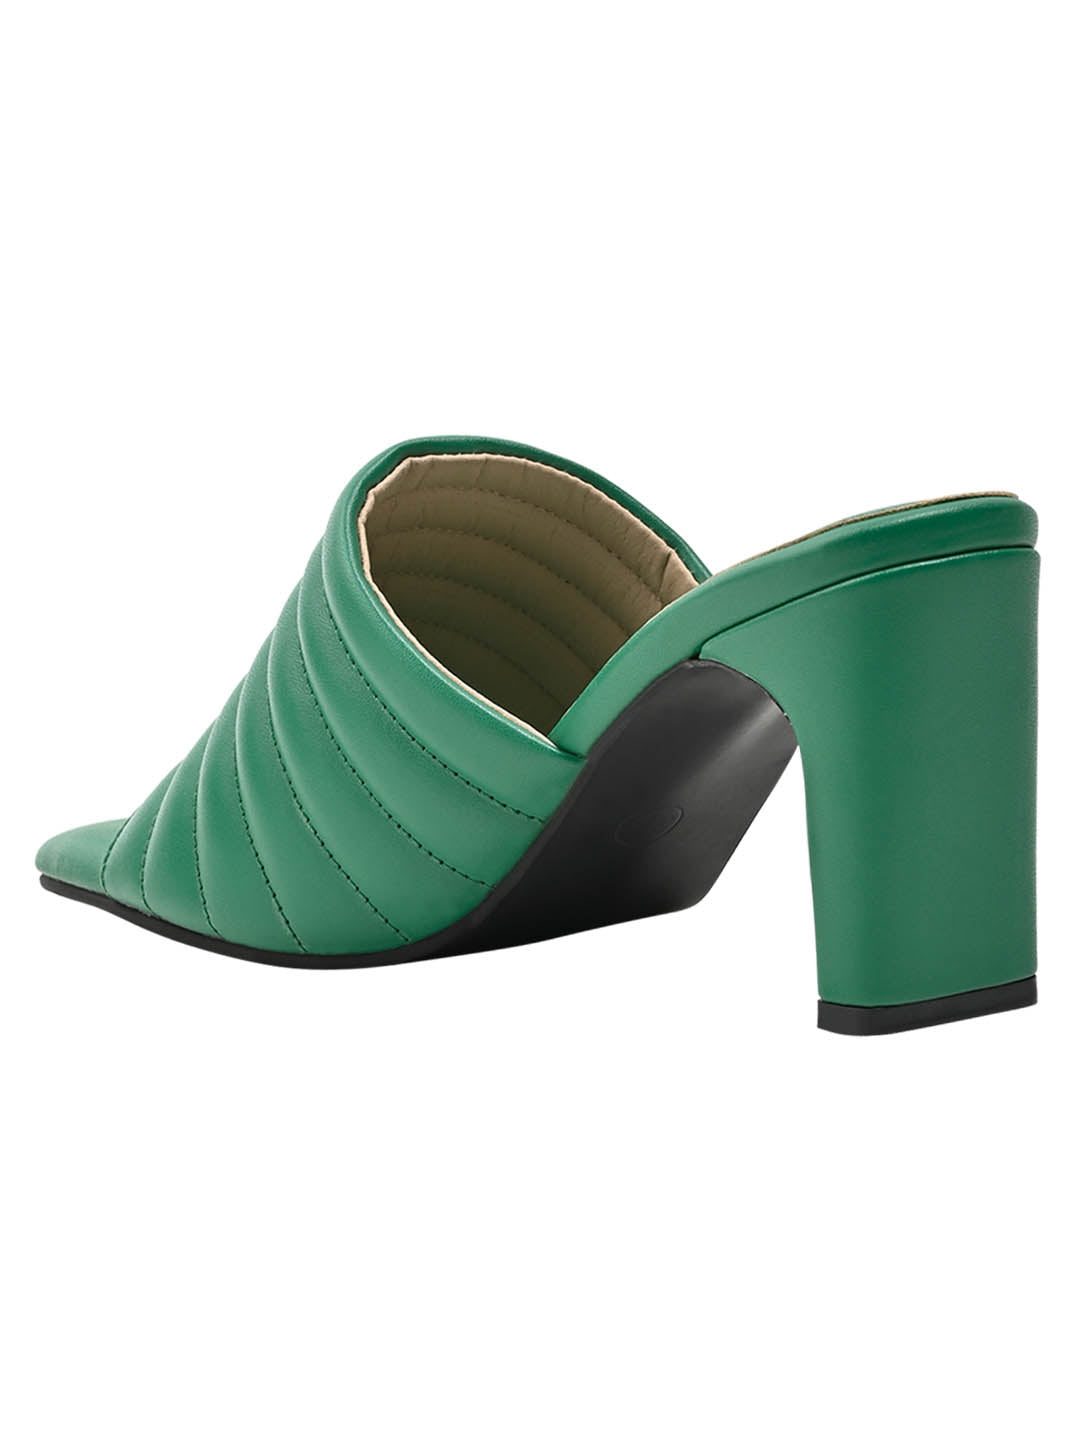 Footwear, Women Footwear, Green Sandals